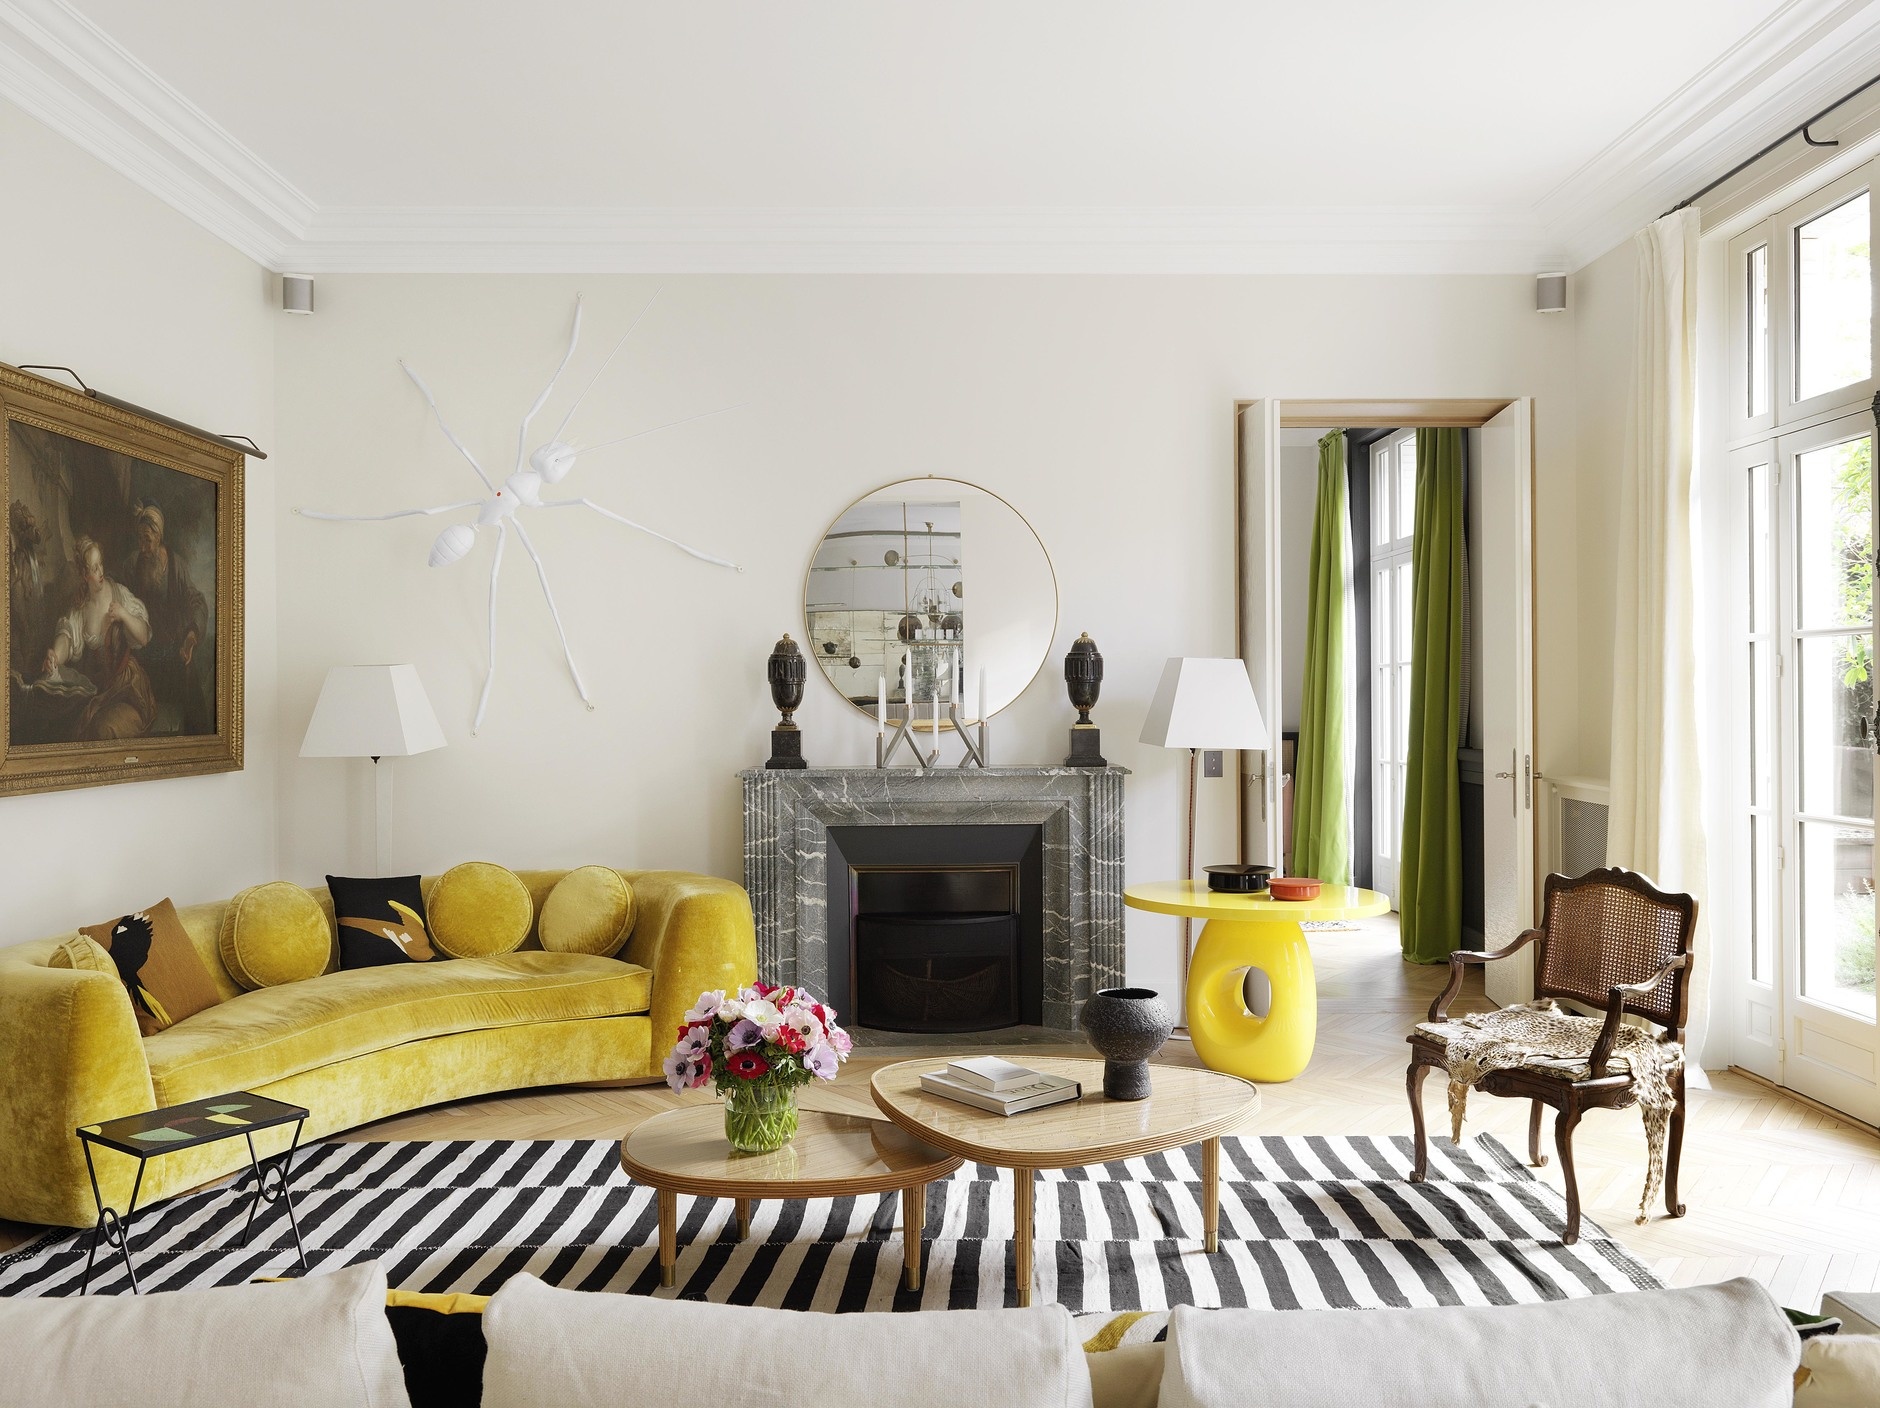 Bên cạnh những chi tiết mang nét cổ điển như tranh treo tường, ghế bành thì bàn nước đôi và sofa cong bọc nhung màu vàng mù tạt lại mang đến một hơi thở hiện đại.